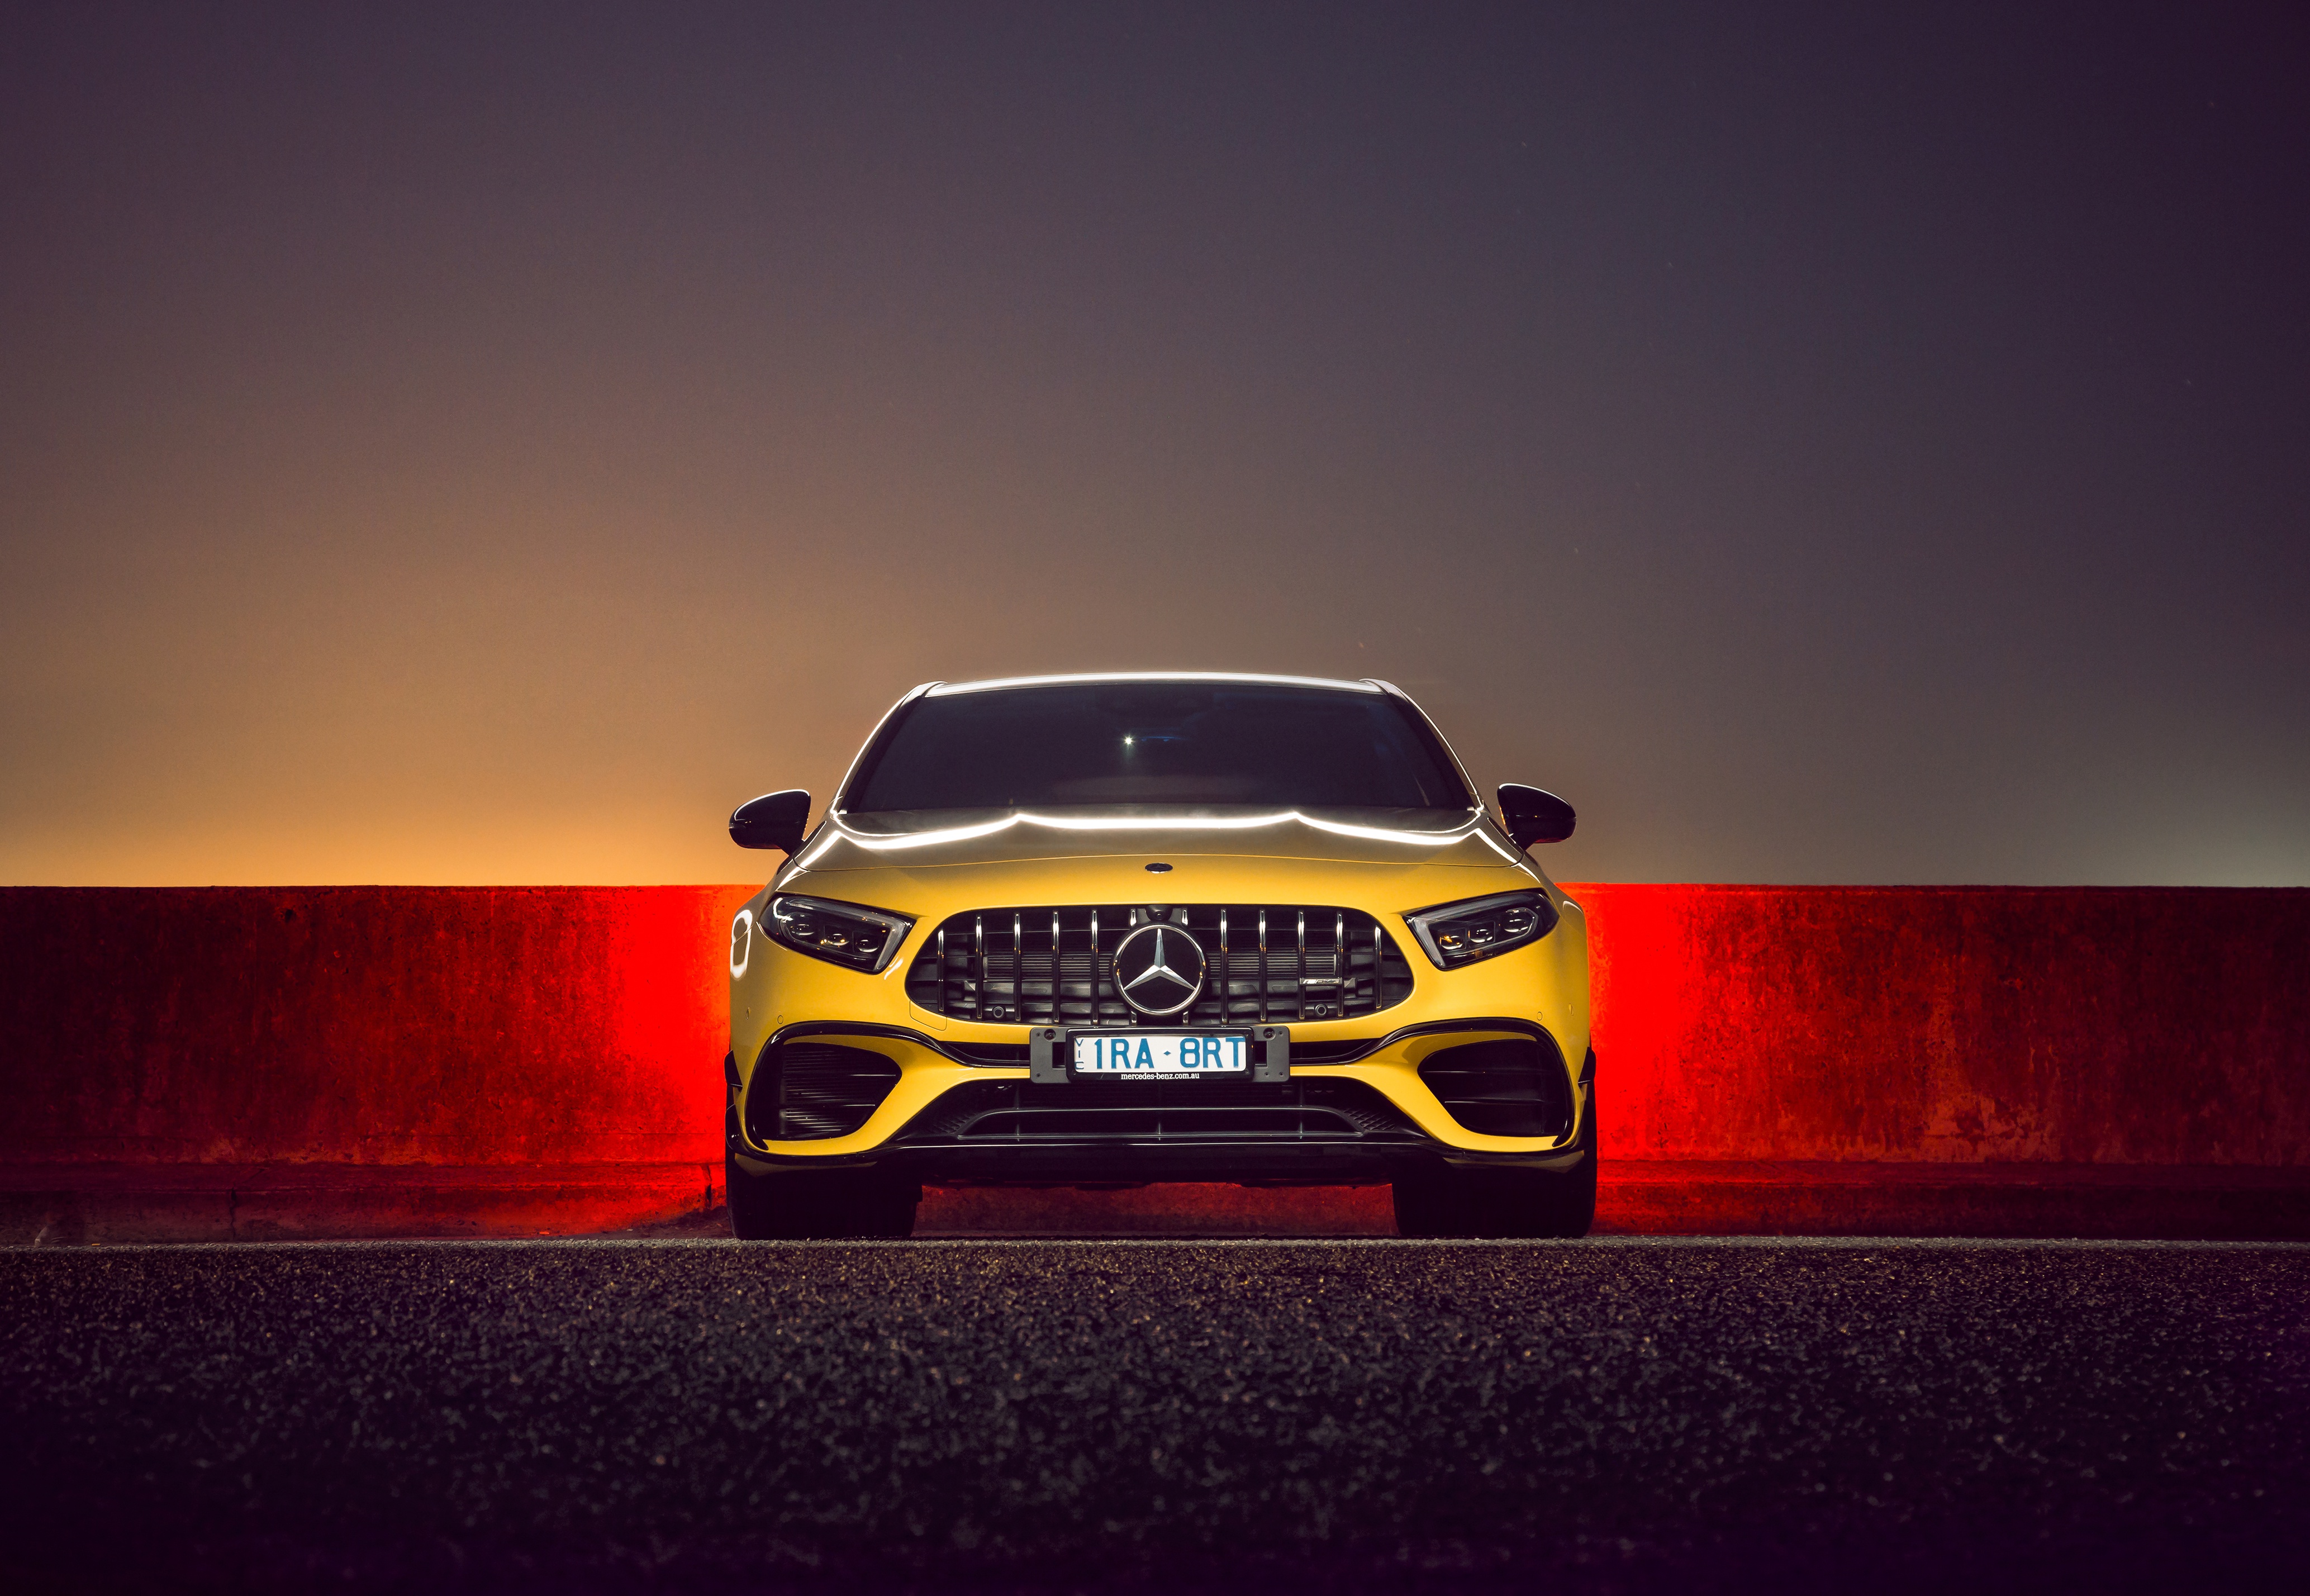 Mercedes Benz Amg 5 4k Ultra 高清壁纸 桌面背景 4134x2856 Id Wallpaper Abyss